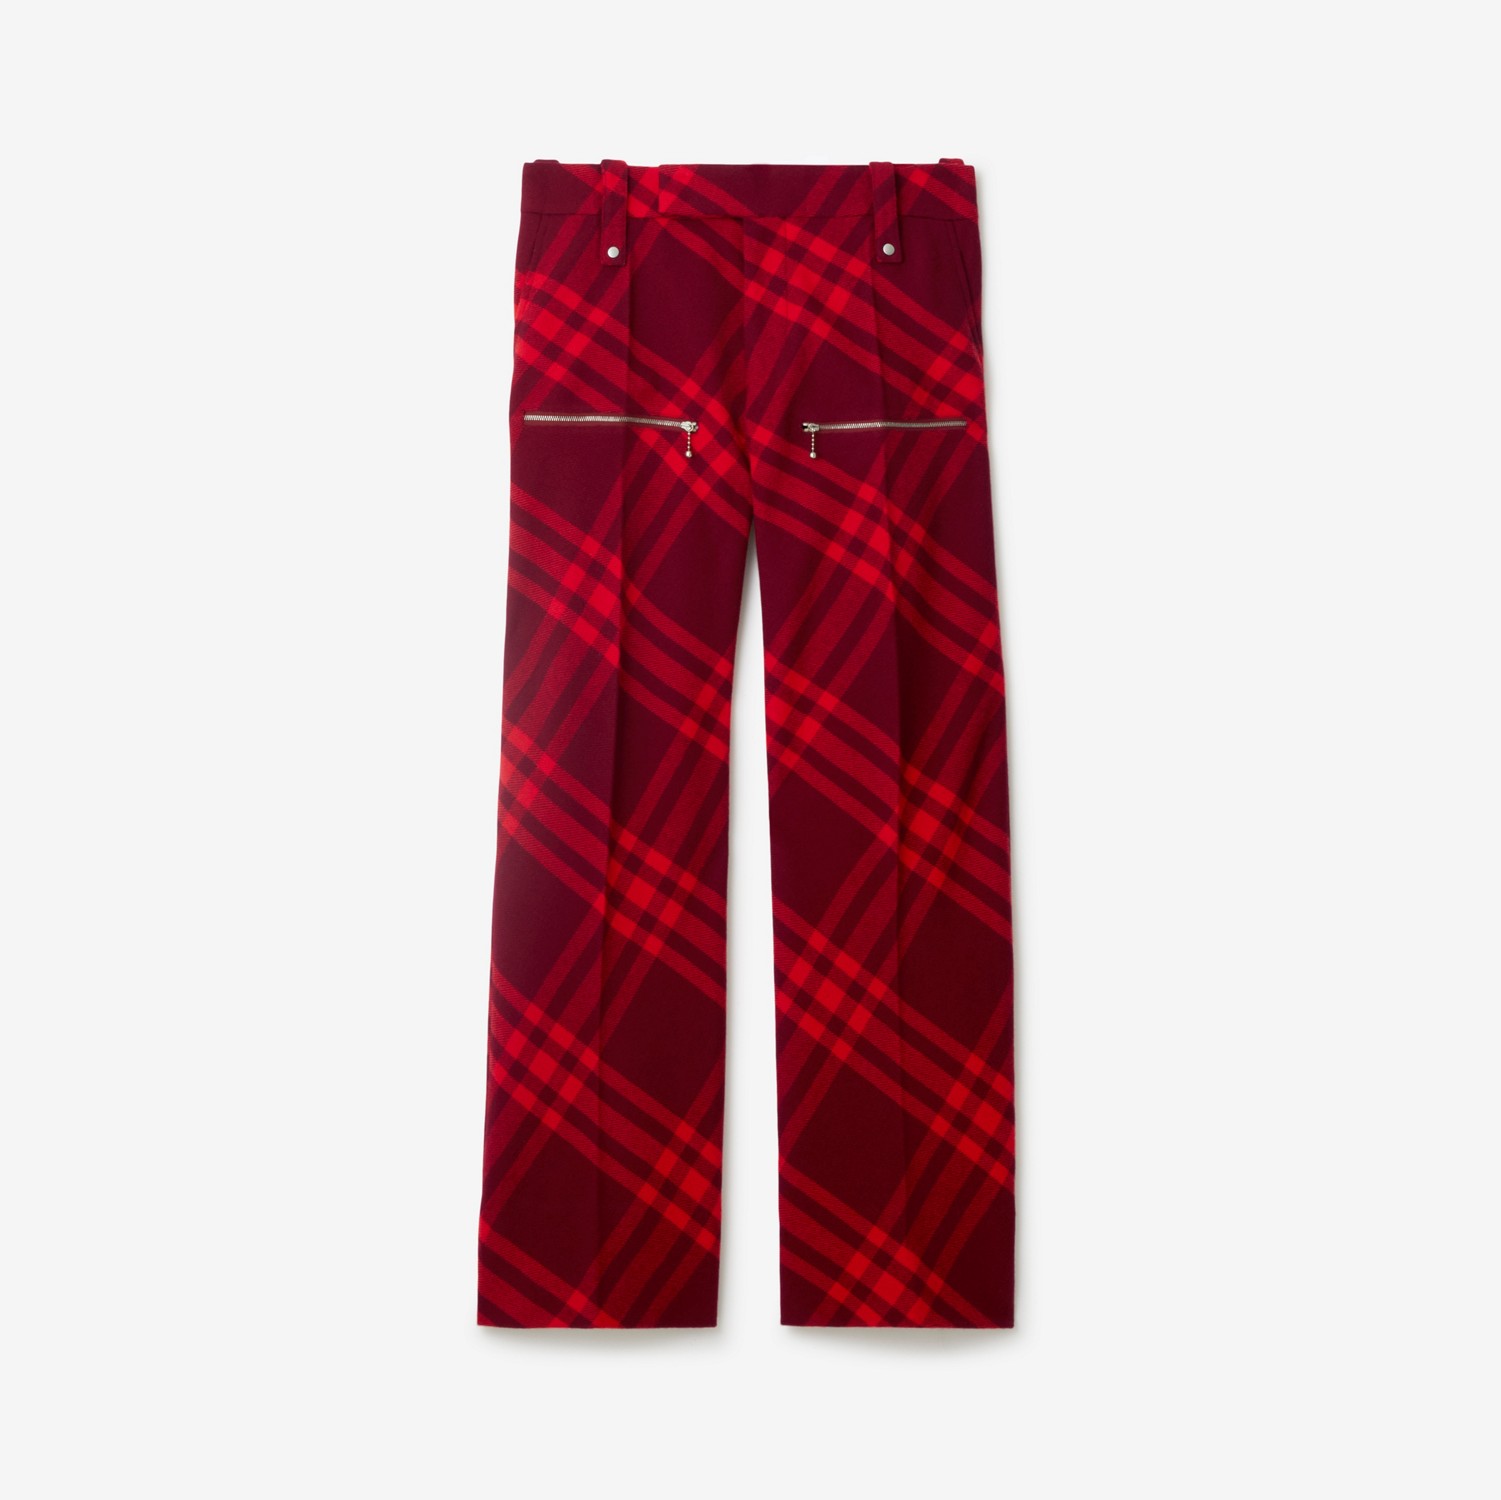 Pantaloni in lana Check (Ripple) - Uomo | Sito ufficiale Burberry®